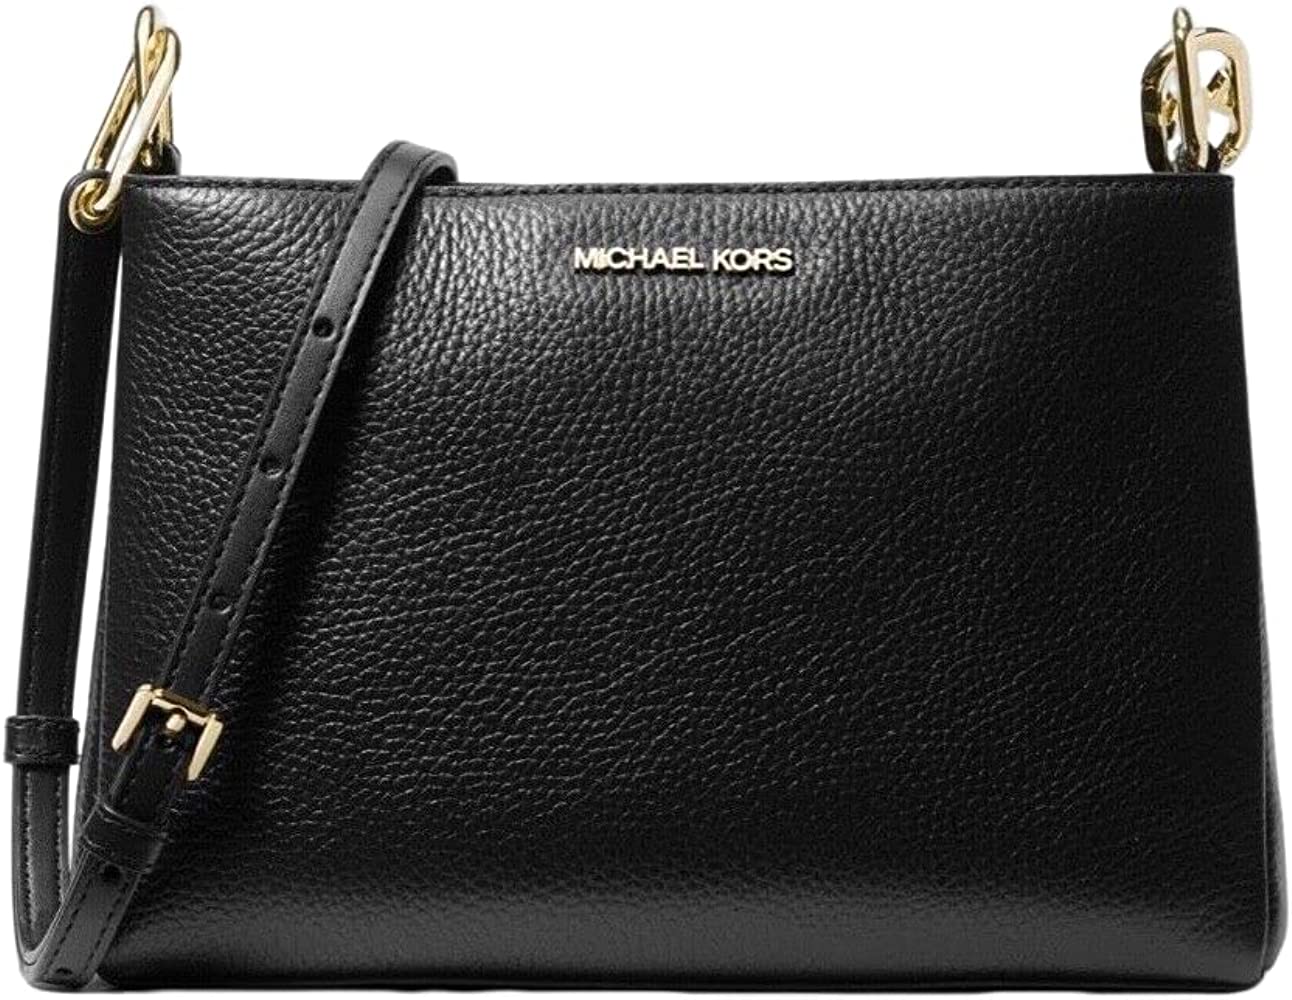 Michael Kors Trisha Leather Triple Compartment Shoulder Bag, Medium